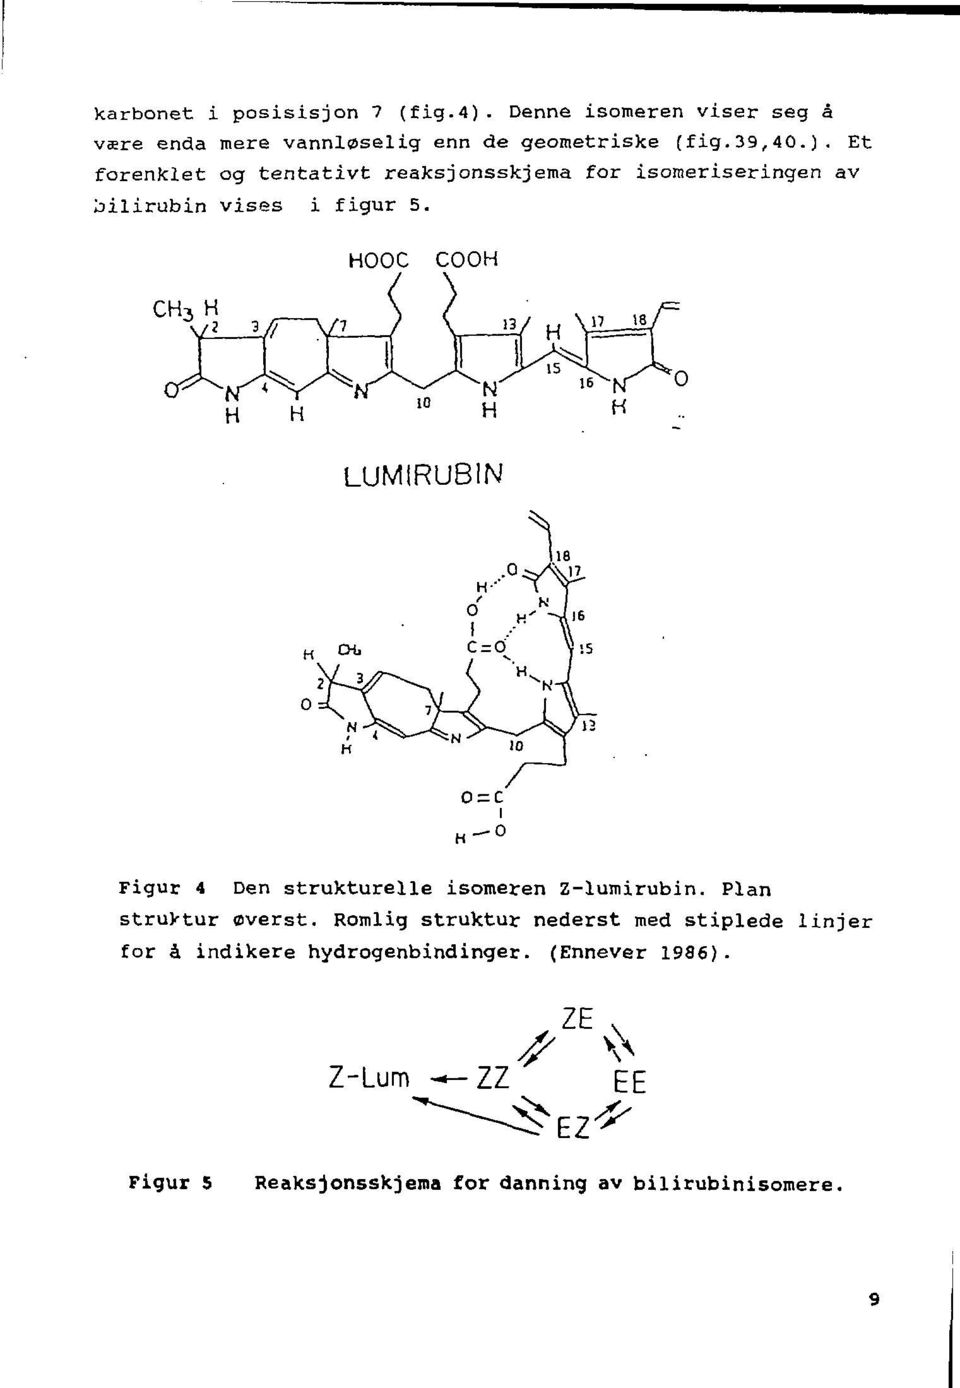 Et forenklet og tentativt reaksjonsskjema for isomeriseringen av bilirubin vises i figur 5.